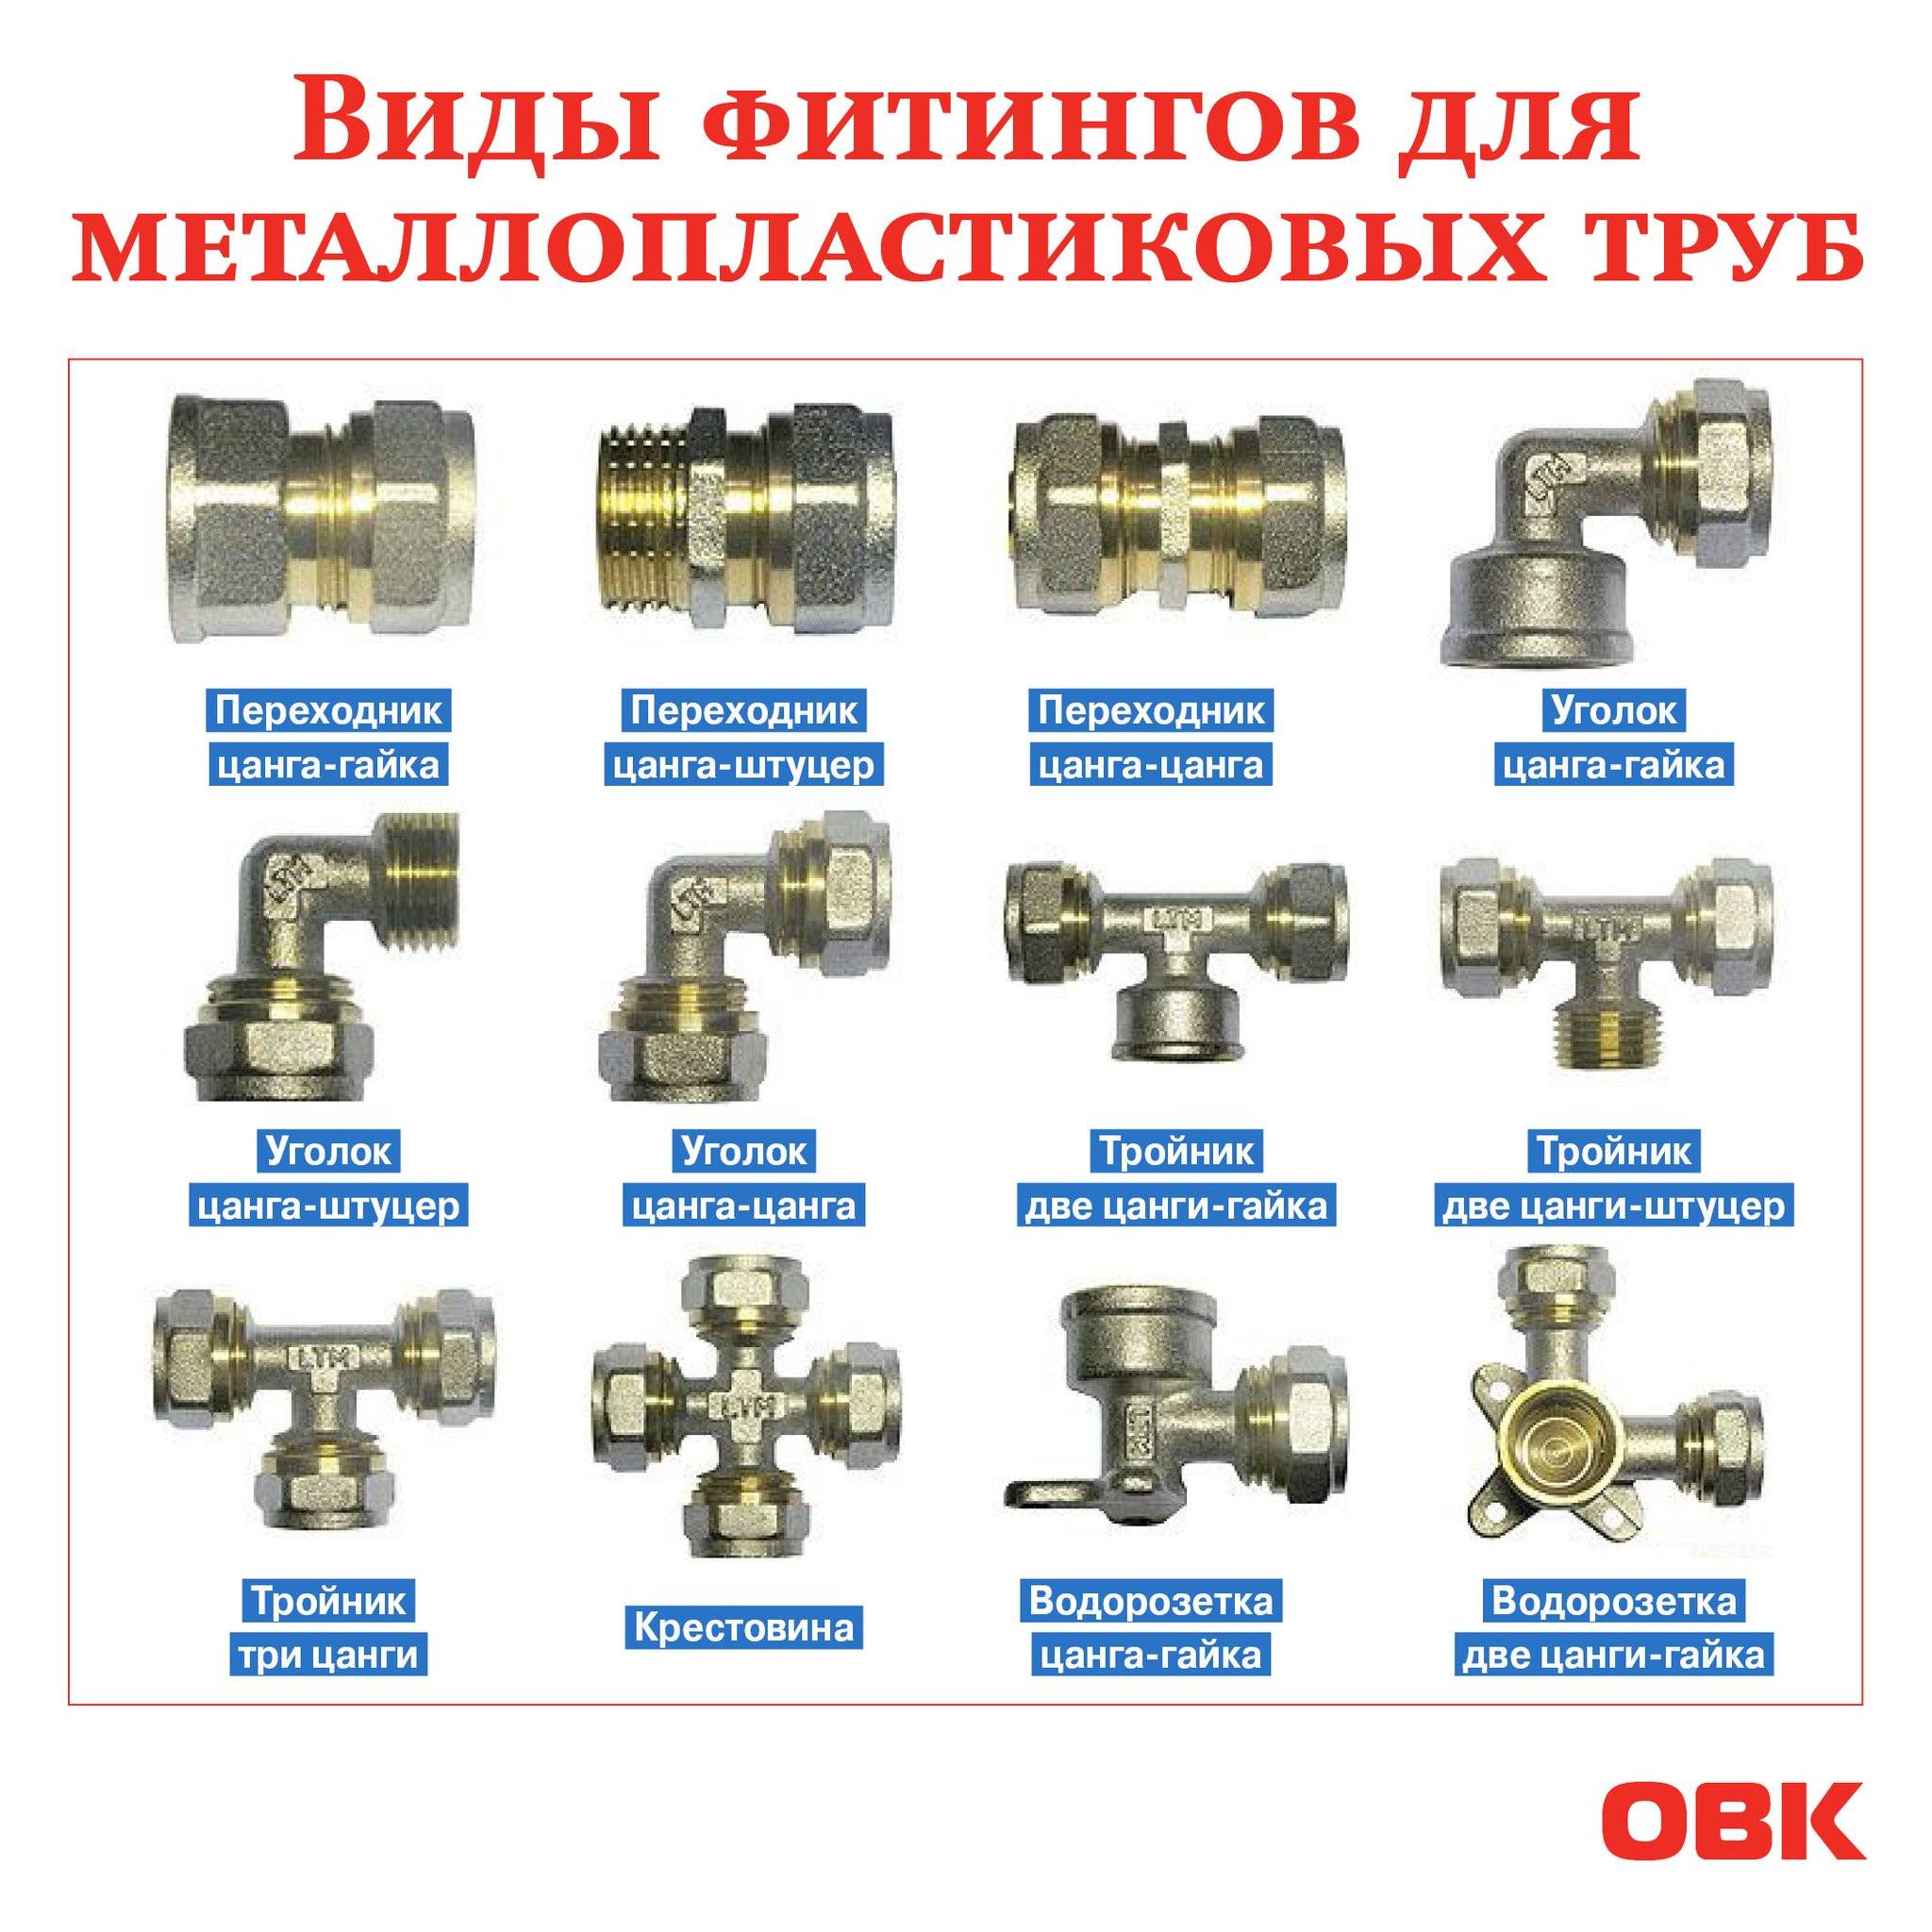 Металлопластиковые трубы: технические характеристики и маркировка, срок службы, какую температуру выдерживают